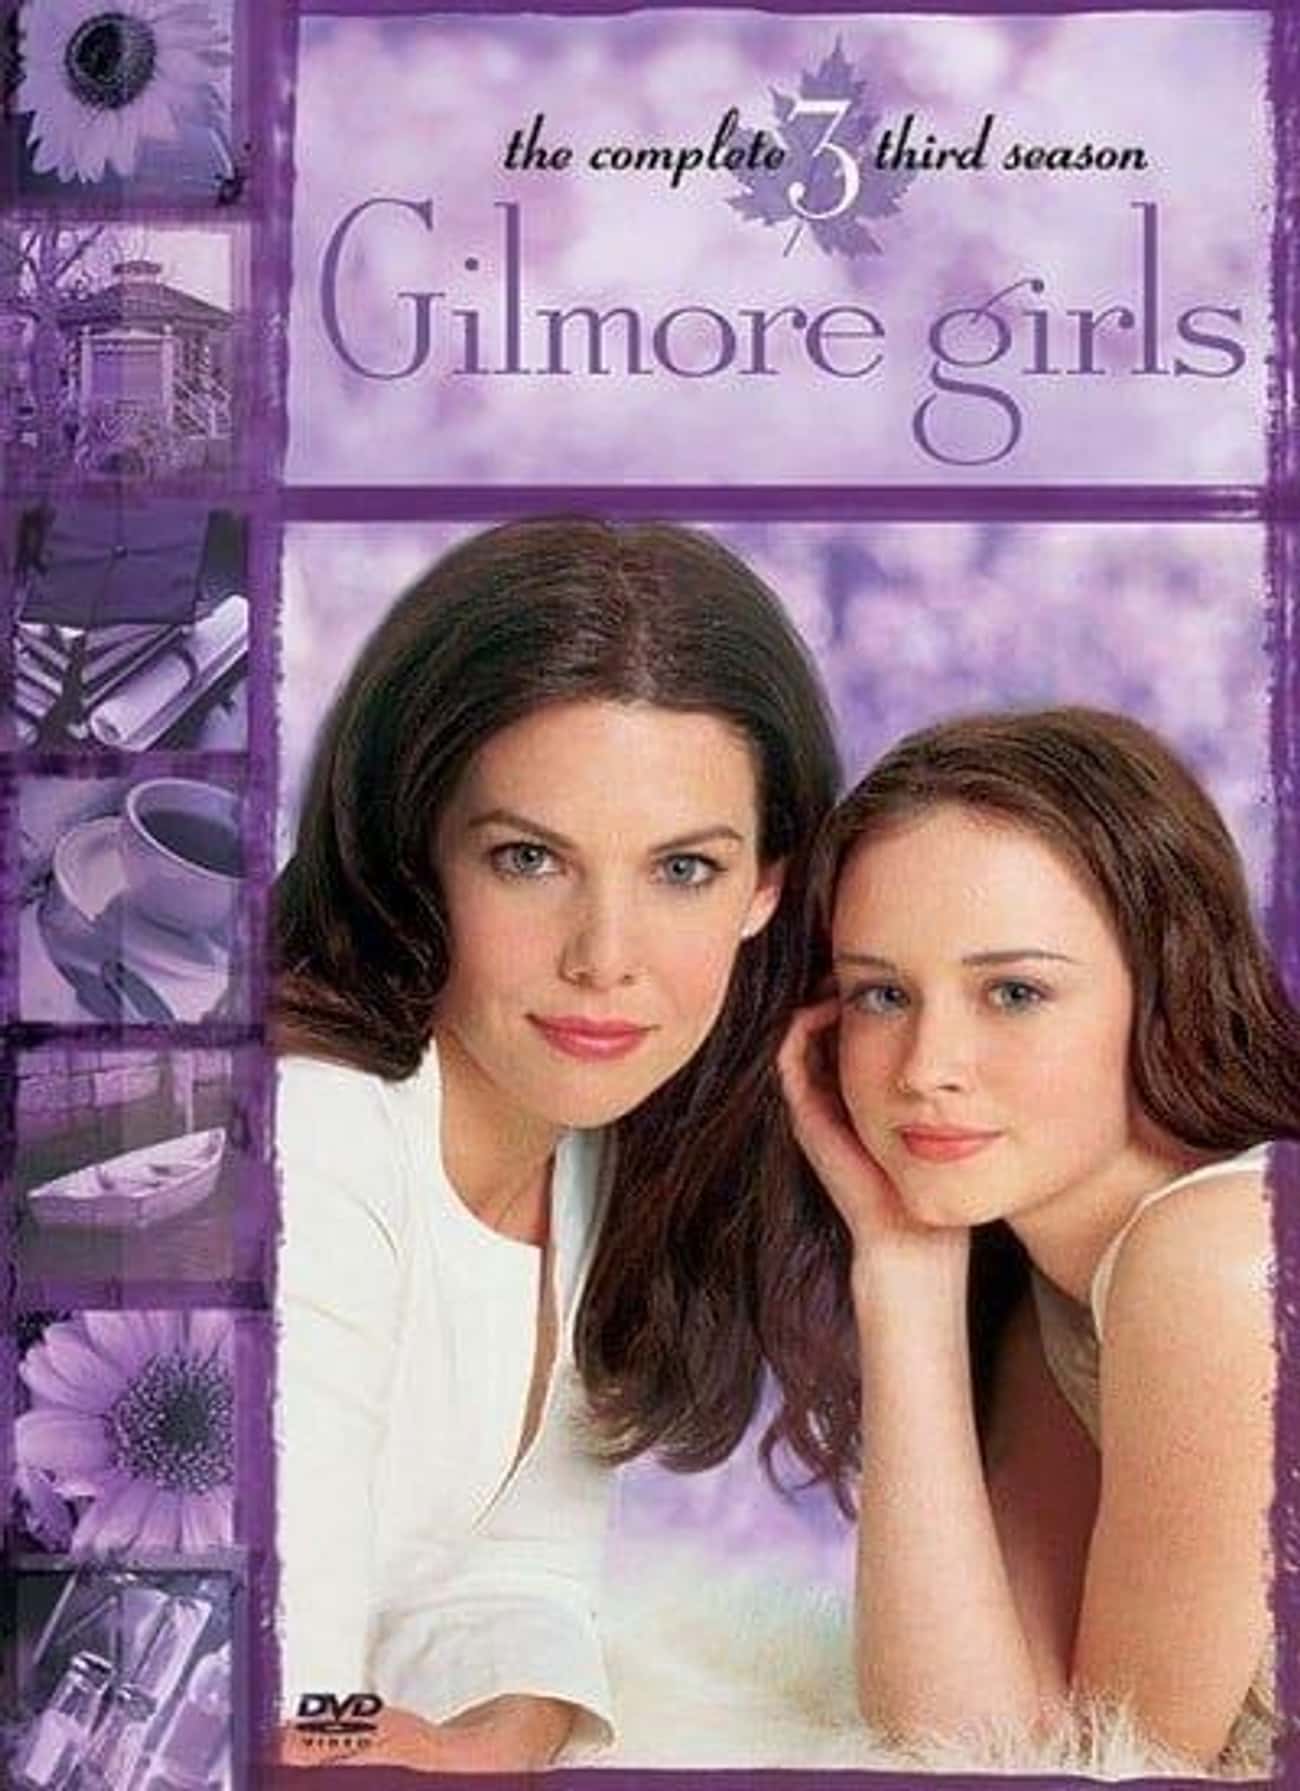 Gilmore Girls - Season 3